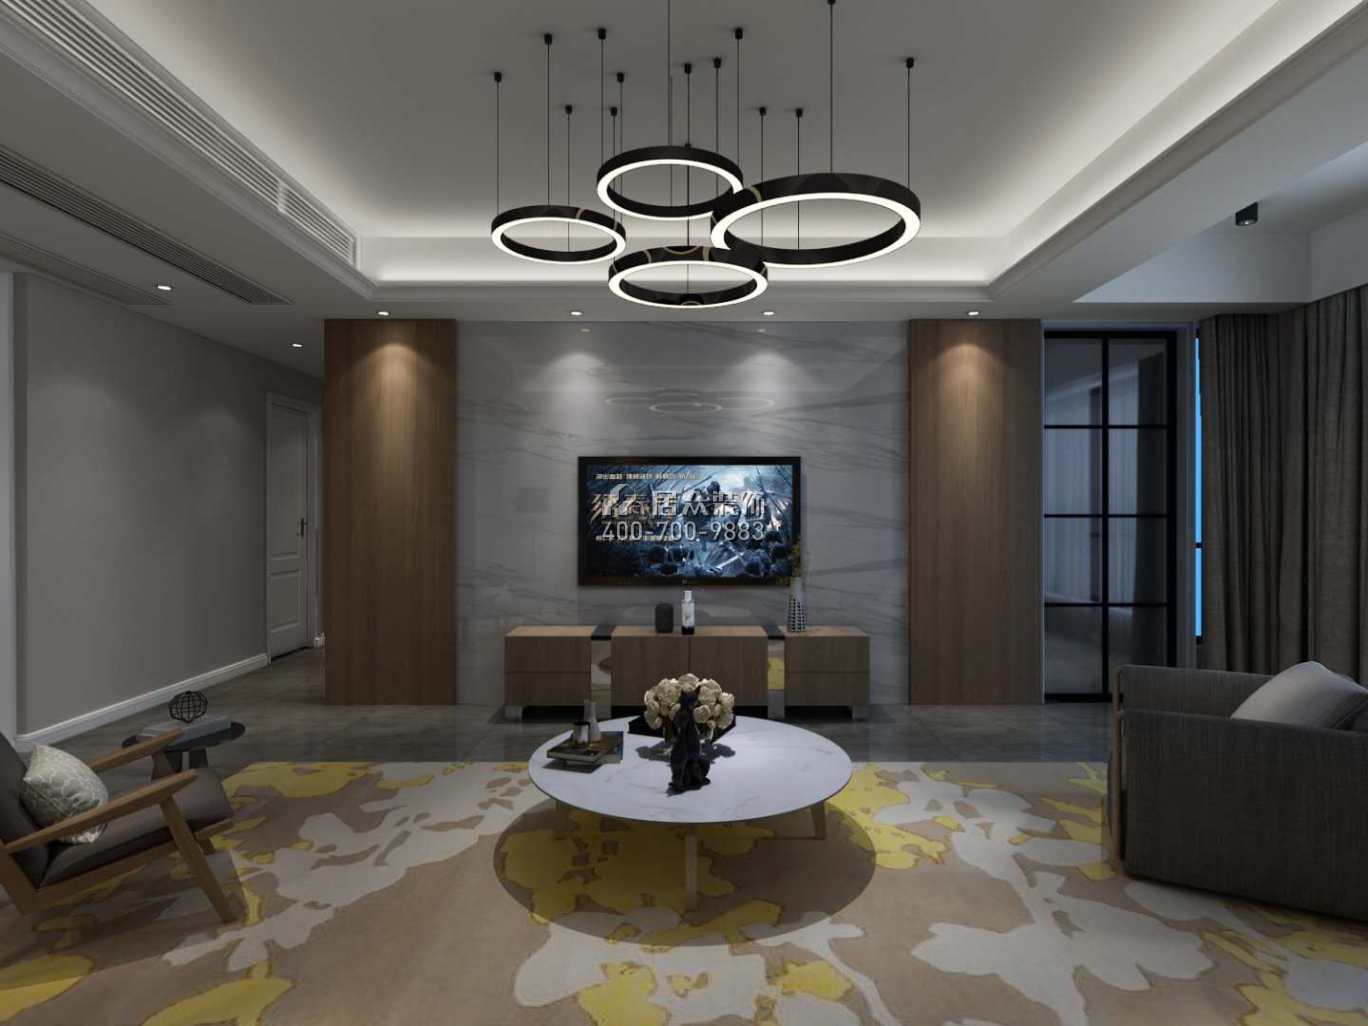 里仁居120平方米現代簡約風格平層戶型客廳裝修效果圖